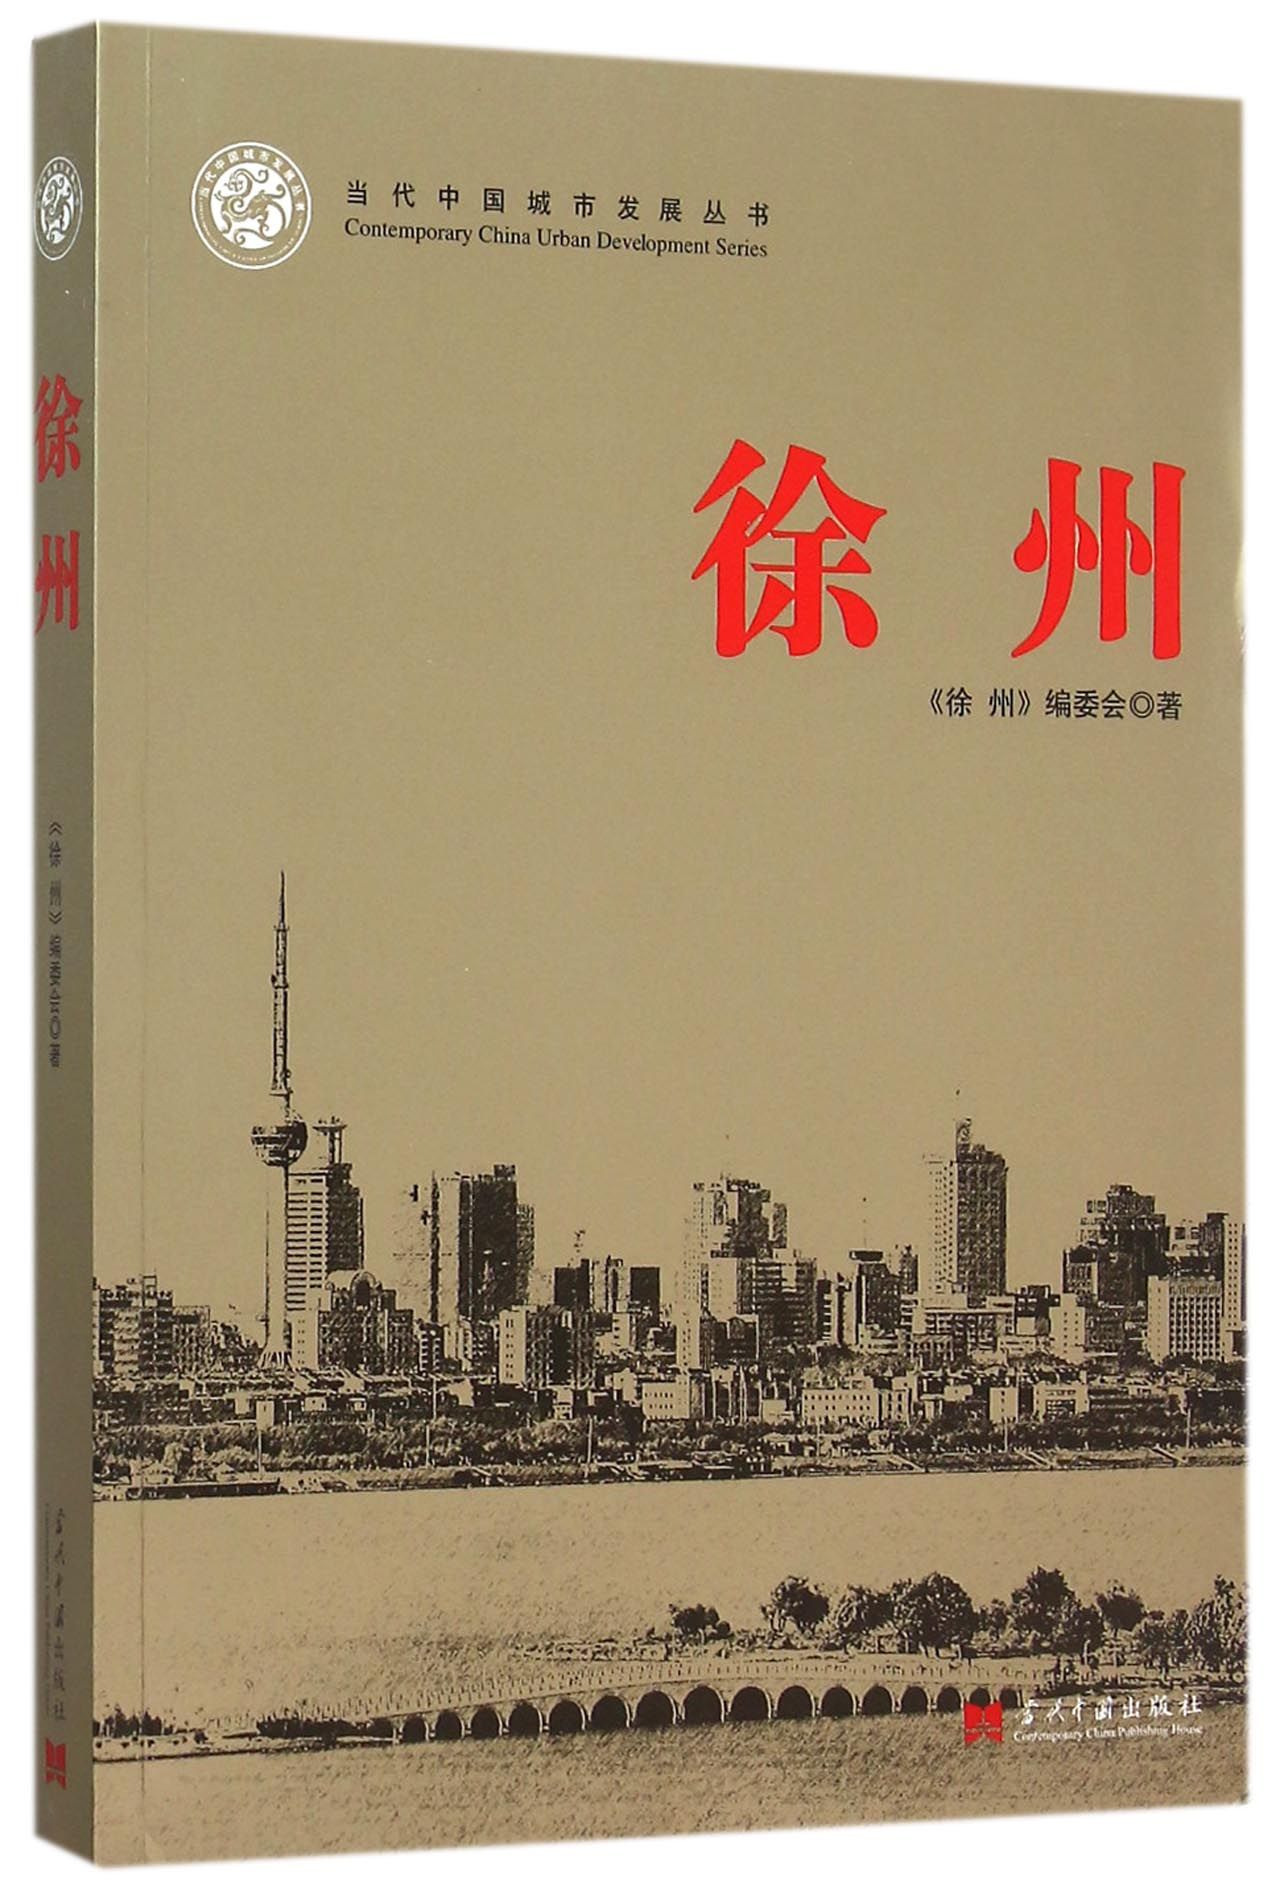 徐州/当代中国城市发展丛书 kindle格式下载